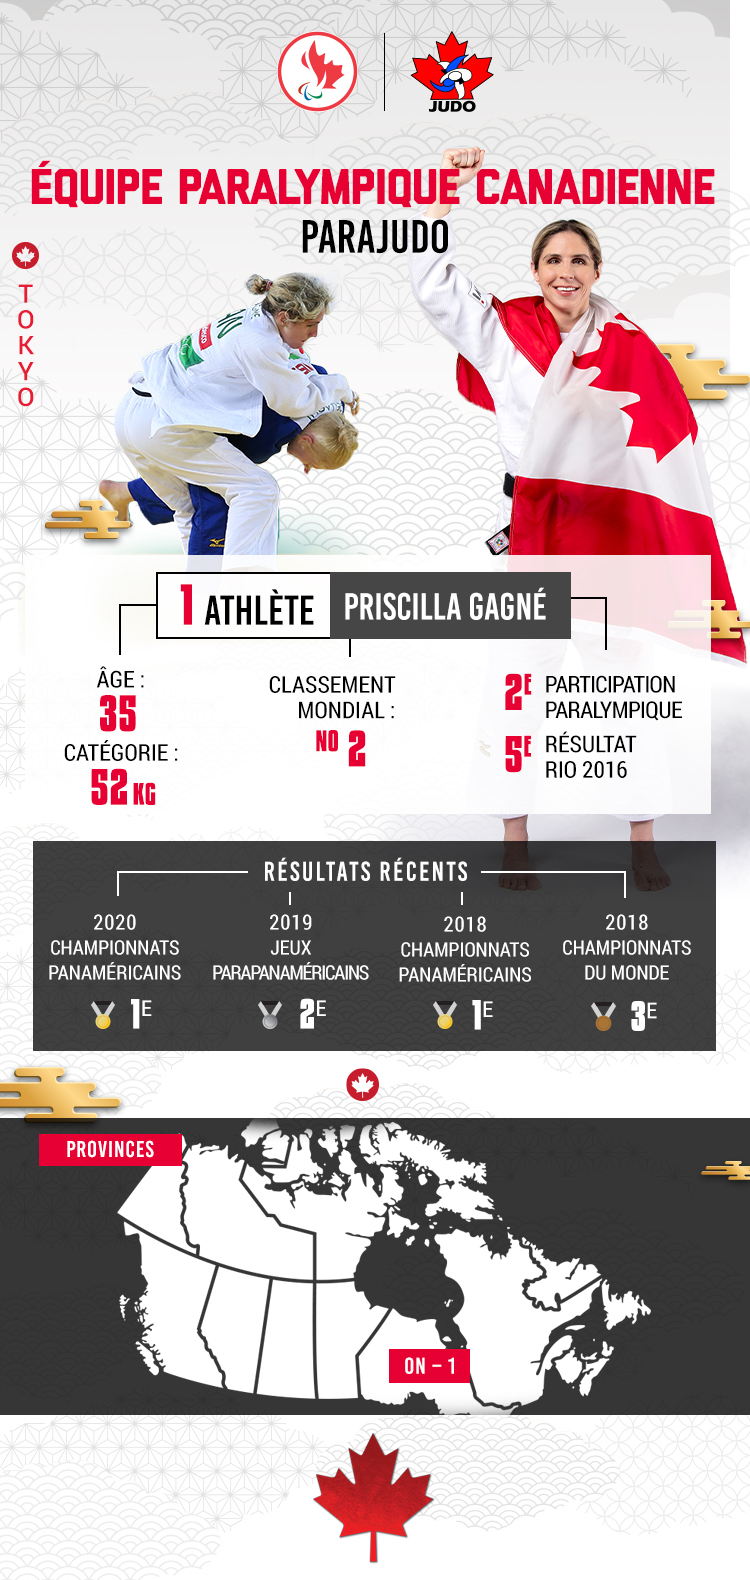 Une infographie avec des statistiques sur l'équipe paralympique canadienne de parajudo - Priscilla Gagné - pour Tokyo 2020